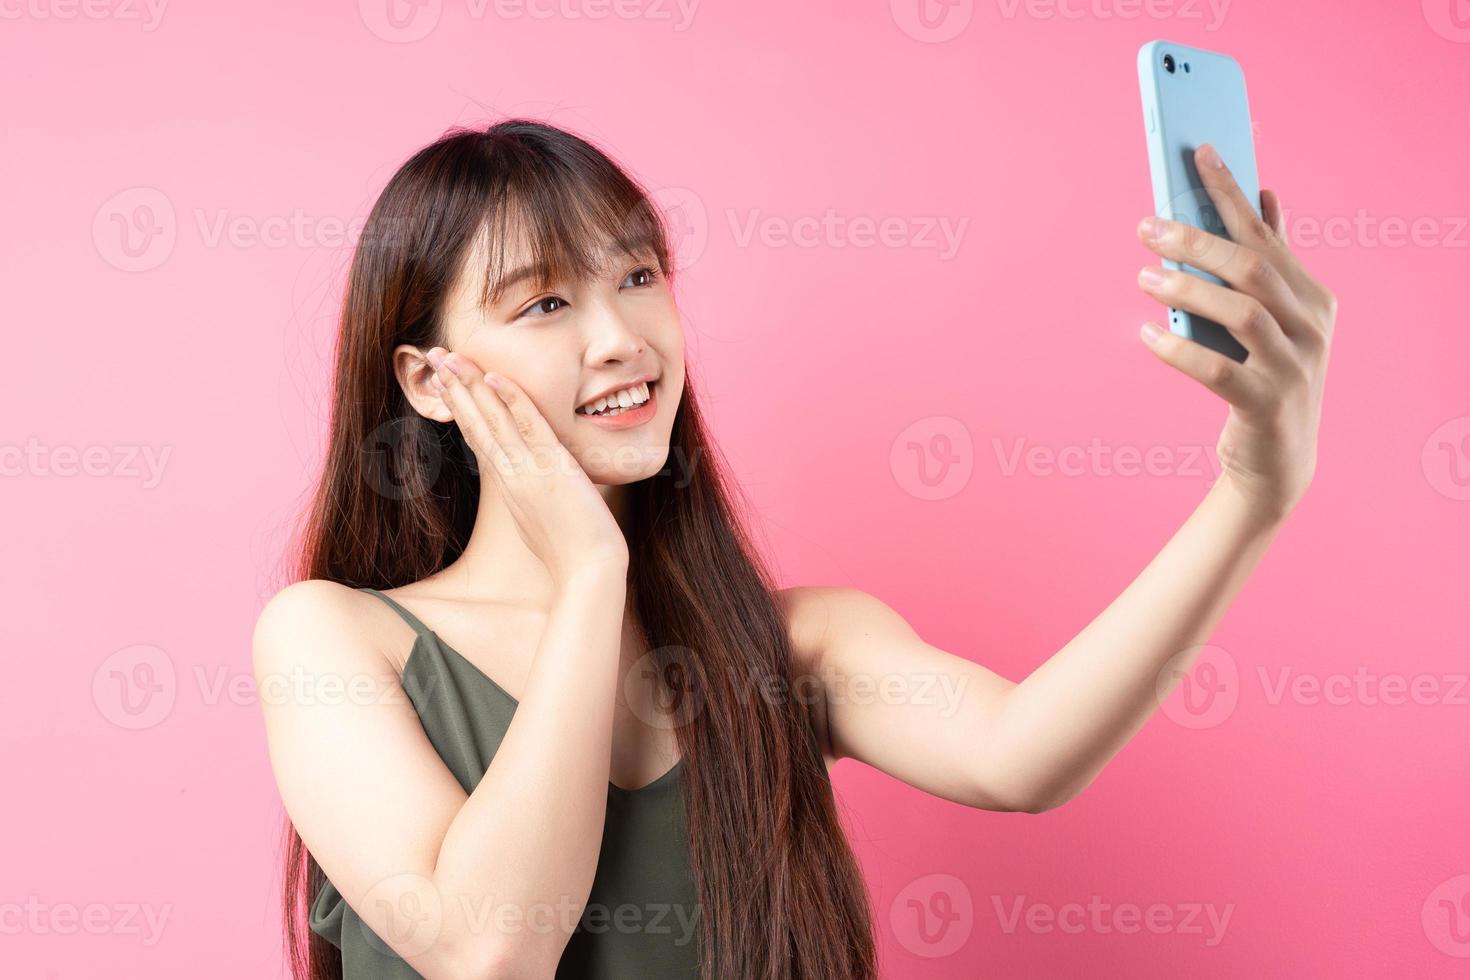 jong Aziatisch meisje poseren op een roze achtergrond foto